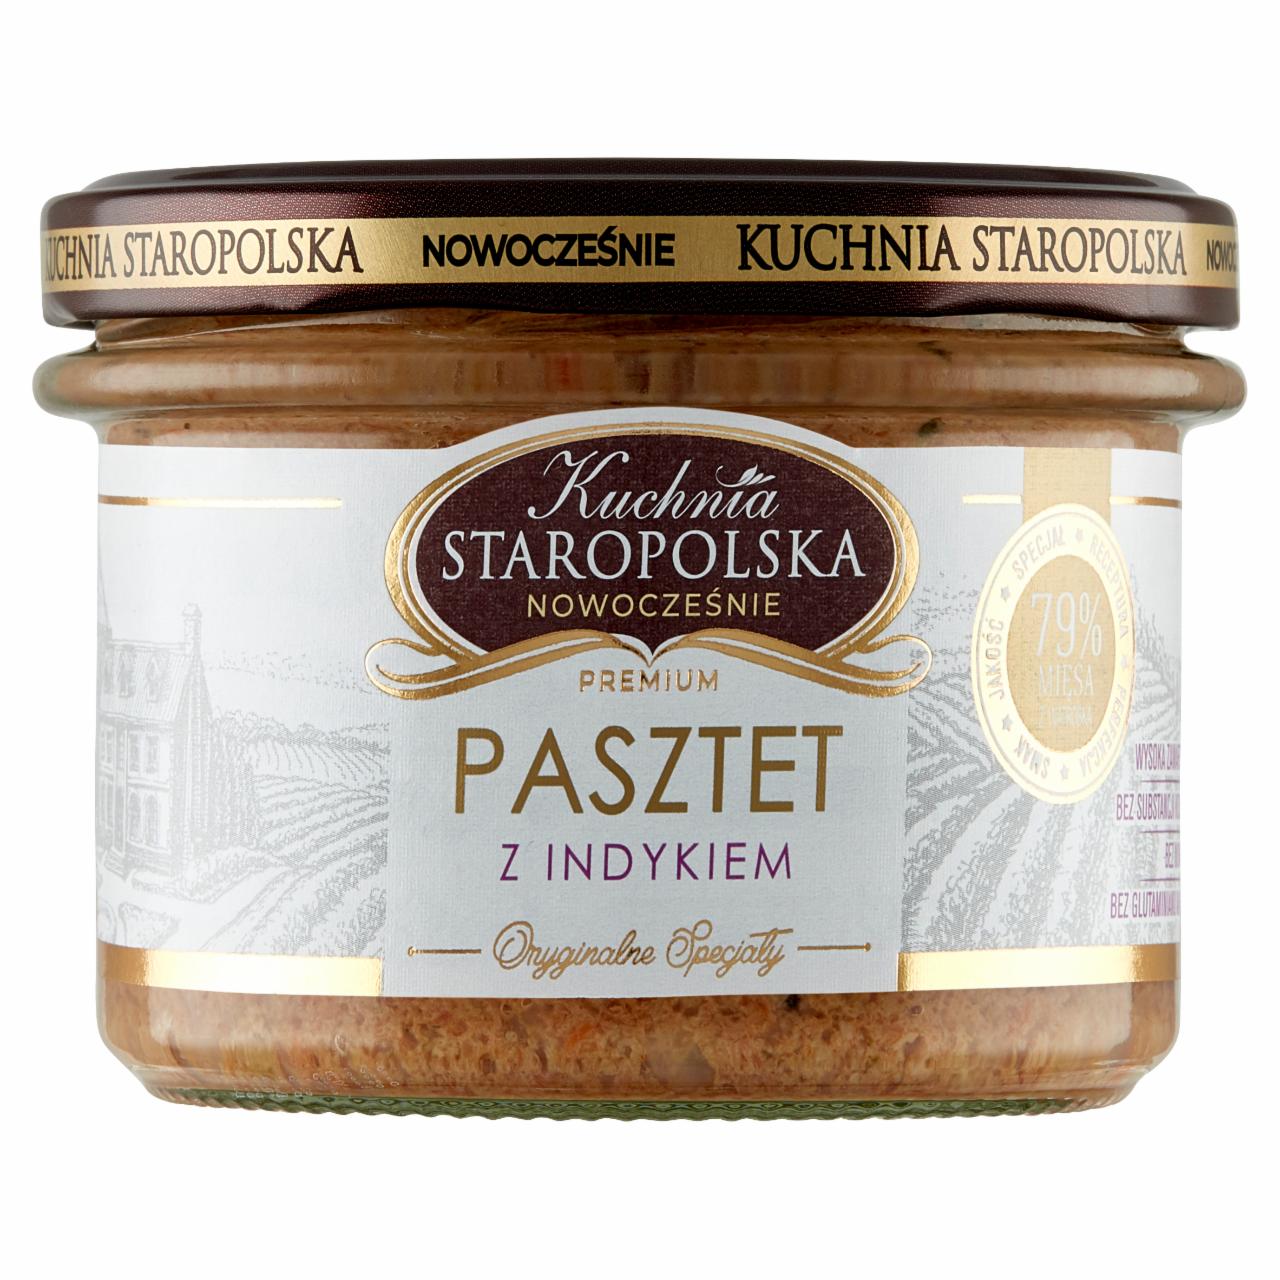 Zdjęcia - Kuchnia Staropolska Premium Pasztet z indykiem 160 g